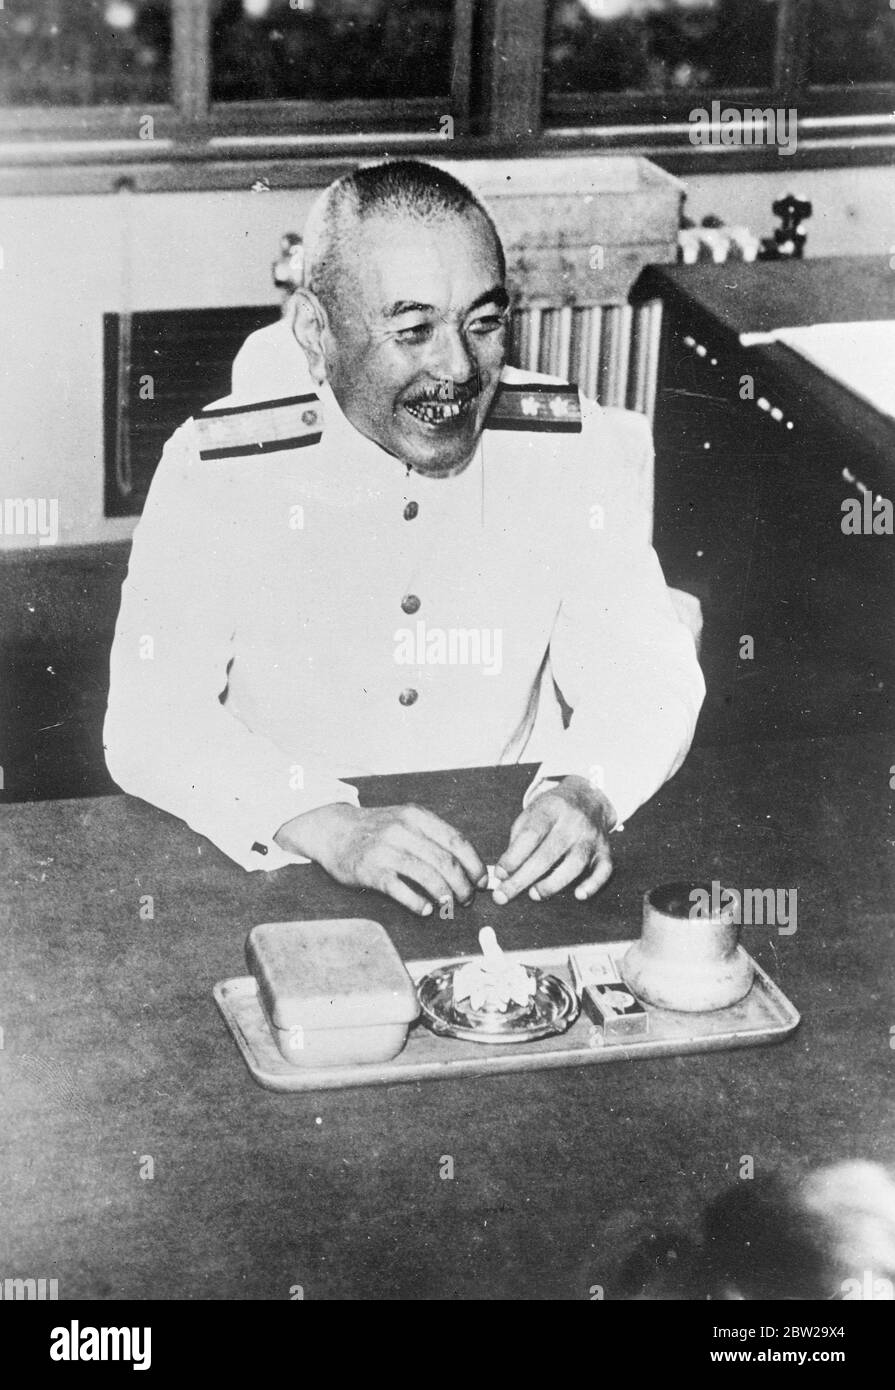 Der Krieg scheint nur ein großer Witz aus Tokio. "Glücklich", so der Vizeadmiral von Koshira Oikawa, dem Leiter des japanischen Navy Air Office in Tokio, der bei dieser herzhaften Guffaw gerade gehört hatte, wie die japanischen Marineflugzeuge nach einem langen Seeflug erfolgreich chinesische Kleiderbügel bombardierten. Nach Ansicht von Vizeadmiral Oikawa ist Krieg eine Kunst, aber nach dem guten Humor der Vizeadmiral ADML ist es nicht die Art von Kunst, die zu ernst genommen werden muss. November 1937 Stockfoto